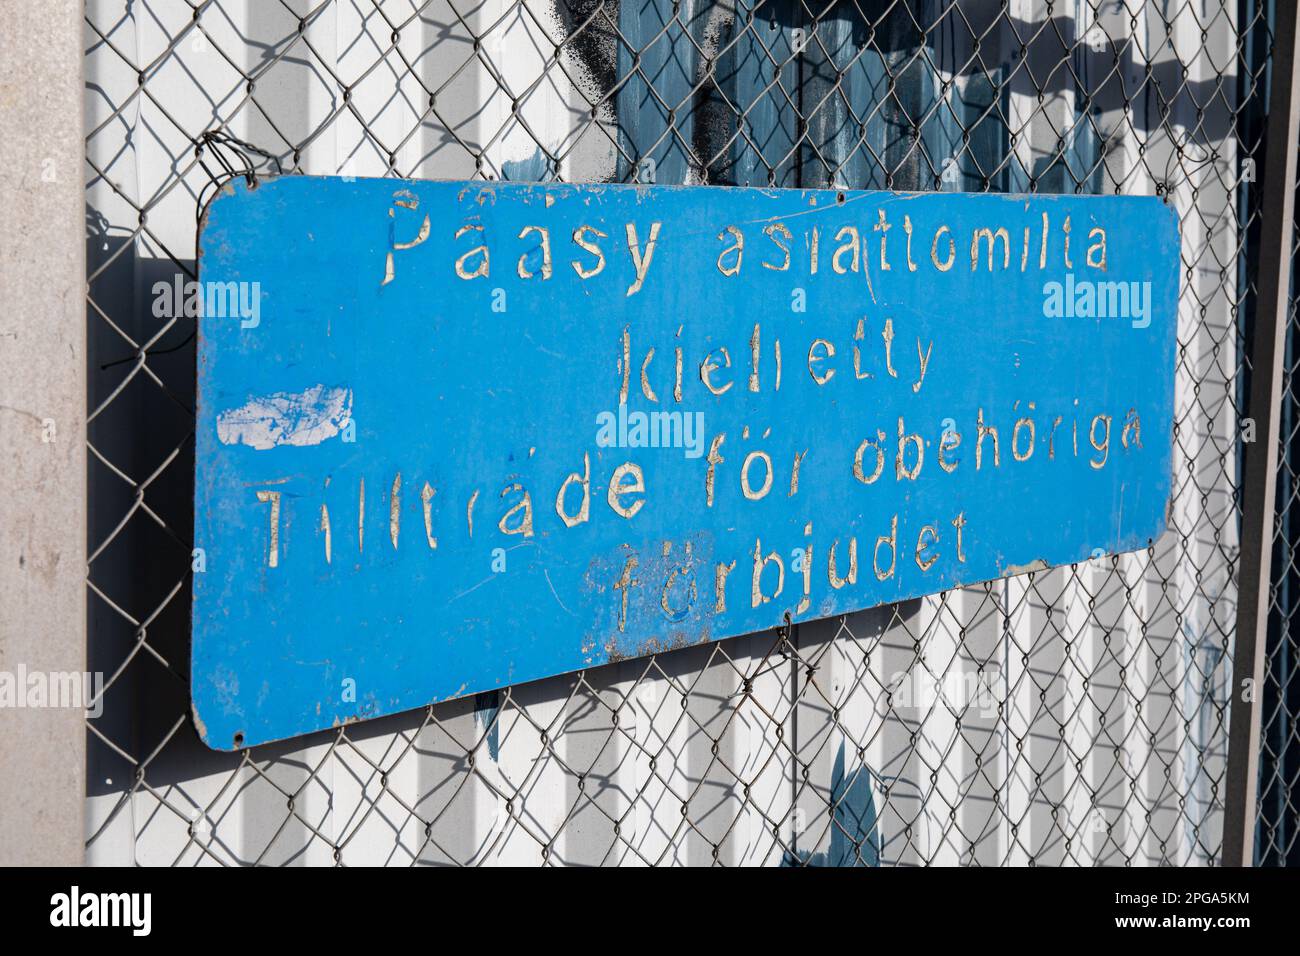 Pääsy asiattomilta kielletty. Old weathered sign on a chain-link fence in Kyläsaari district of Helsinki, Finland. Stock Photo